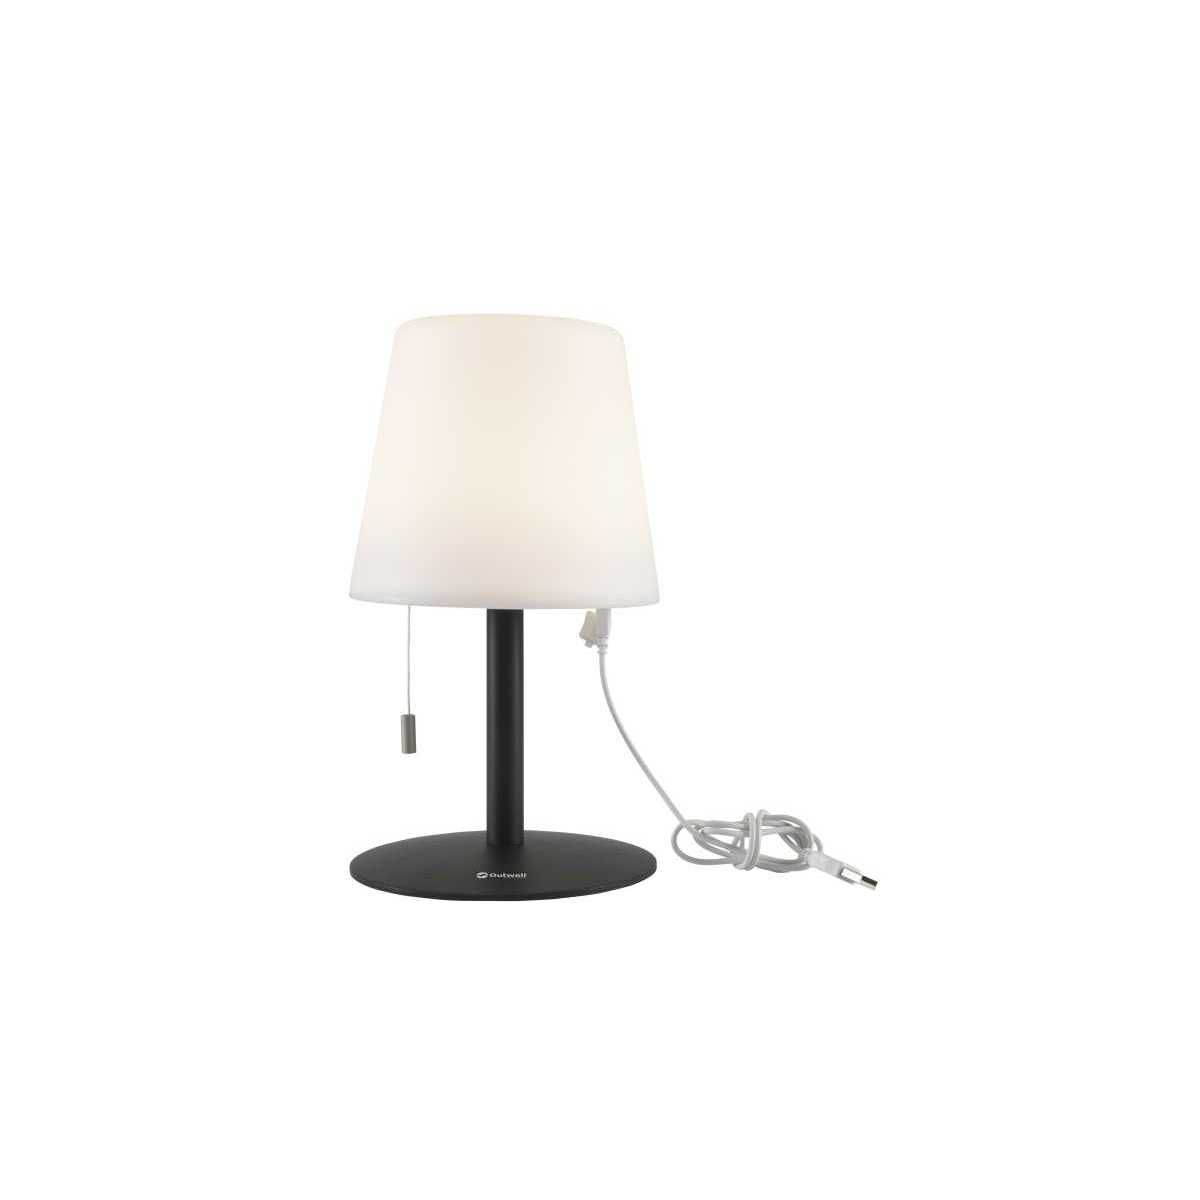 Outwell Ara Lamp Tischlampe wiederaufladbar weiss - 651154